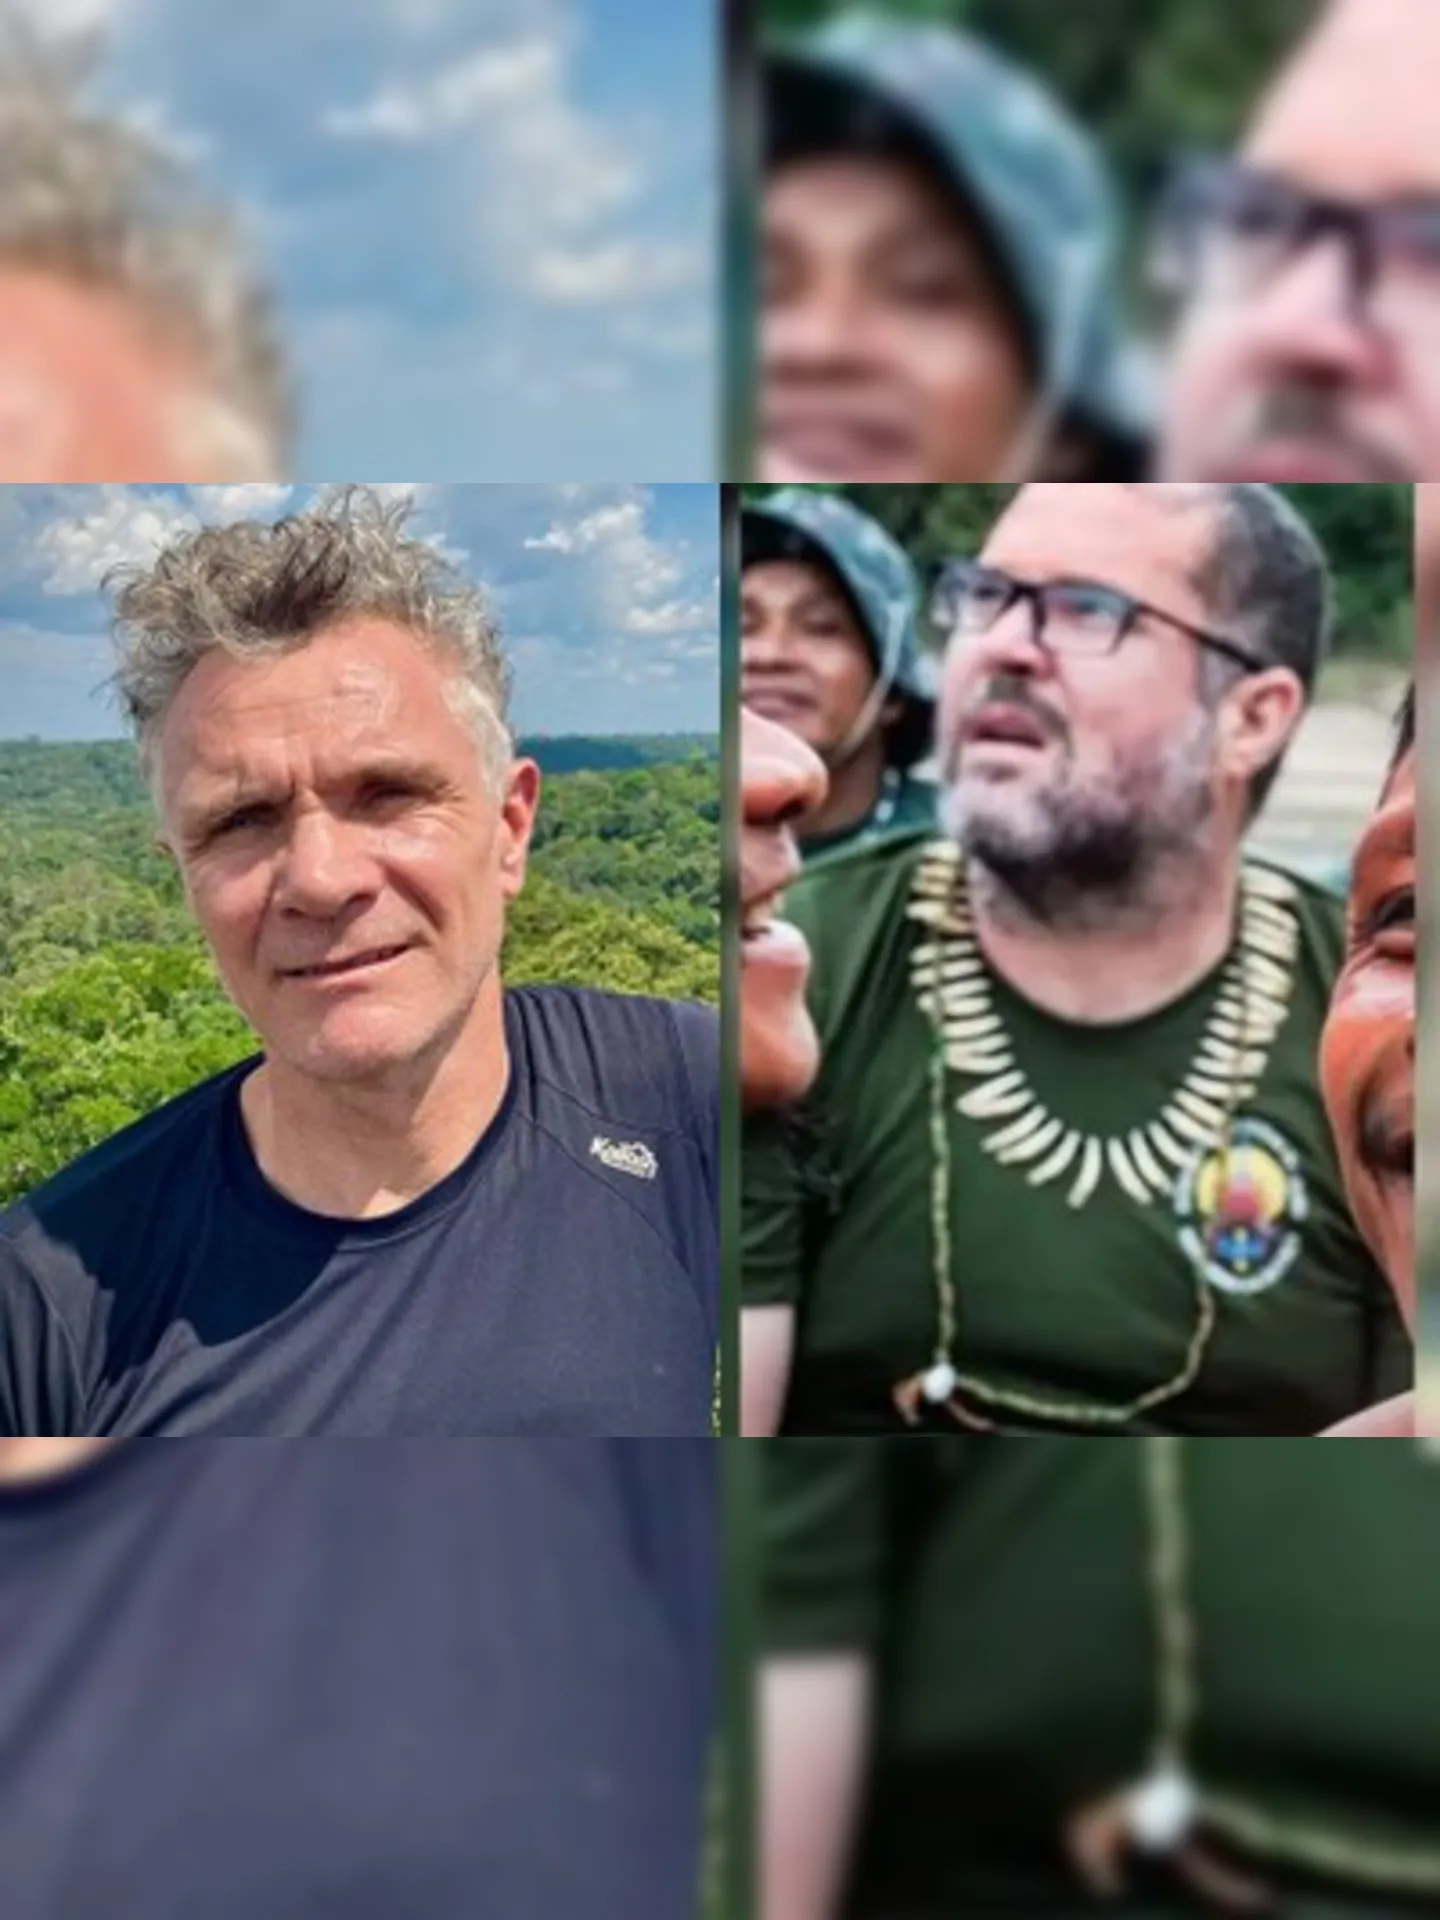 Indigenista Bruno Pereira, servidores licenciado da Funai e Dom Phillips, jornalista inglês, estão há mais de dez dias desaparecidos